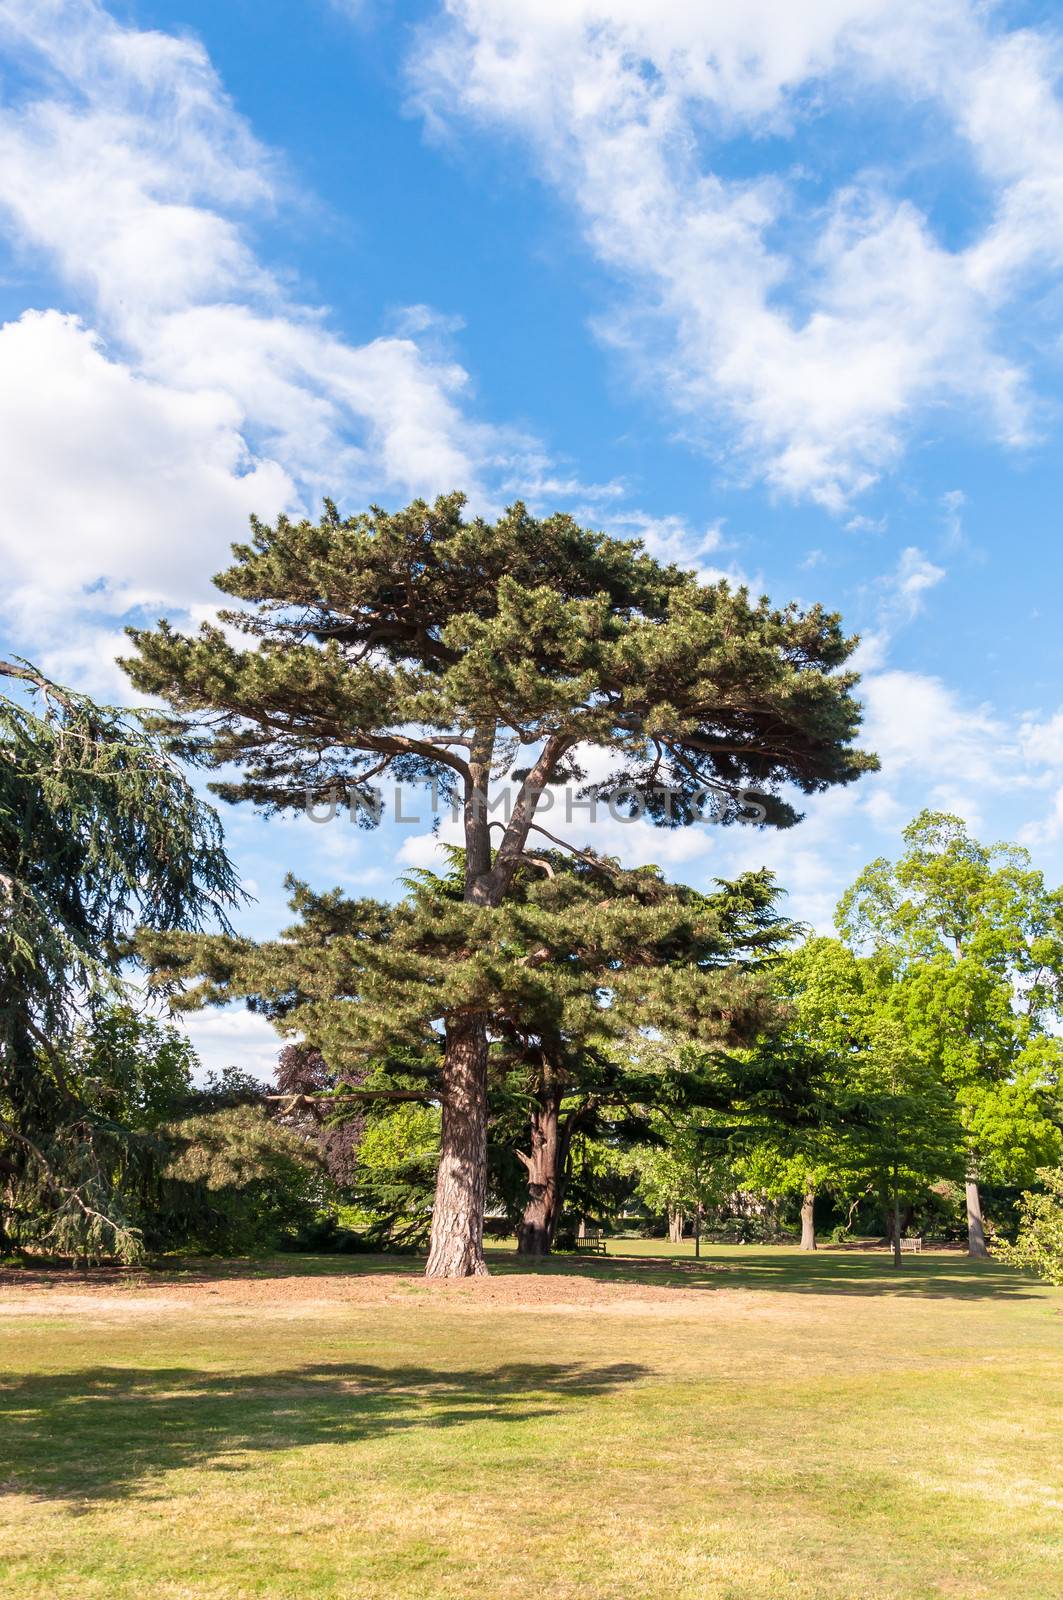 Tree in Kew Royal Botanical Gardens, London, England